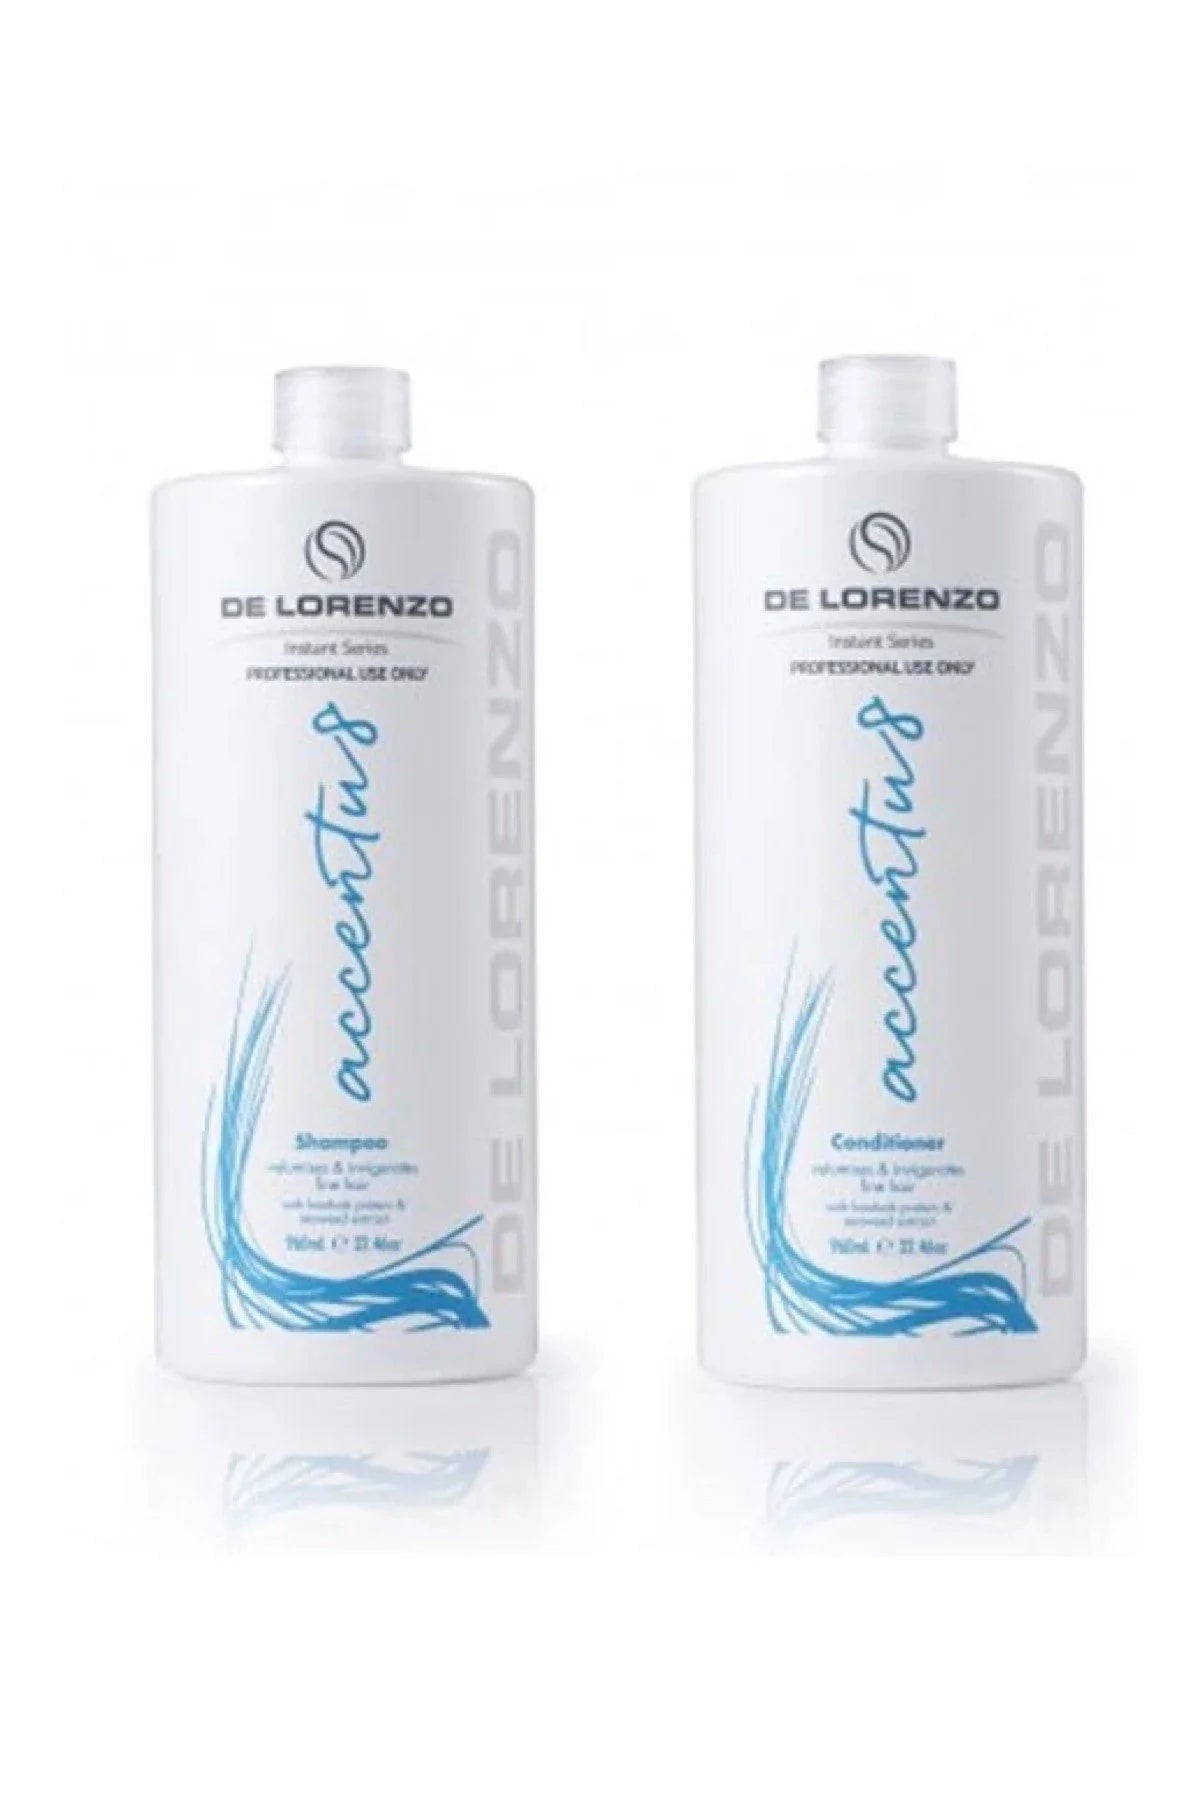 De Lorenzo Instant Accentu8 Shampoo 960ml and Conditioner 960ml Delorenzo Pack